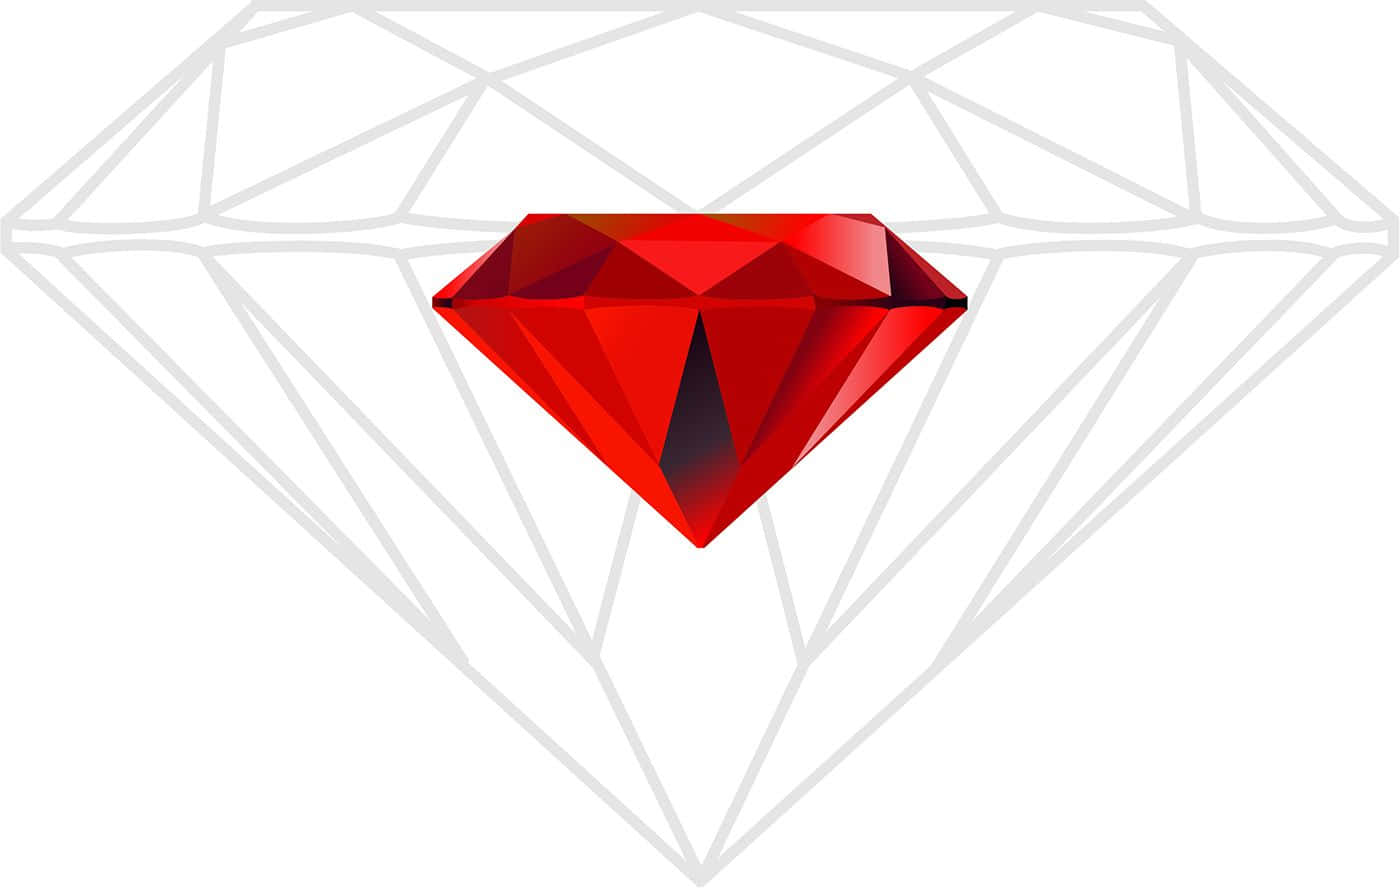 Stunning Red Diamond in Spotlight Wallpaper